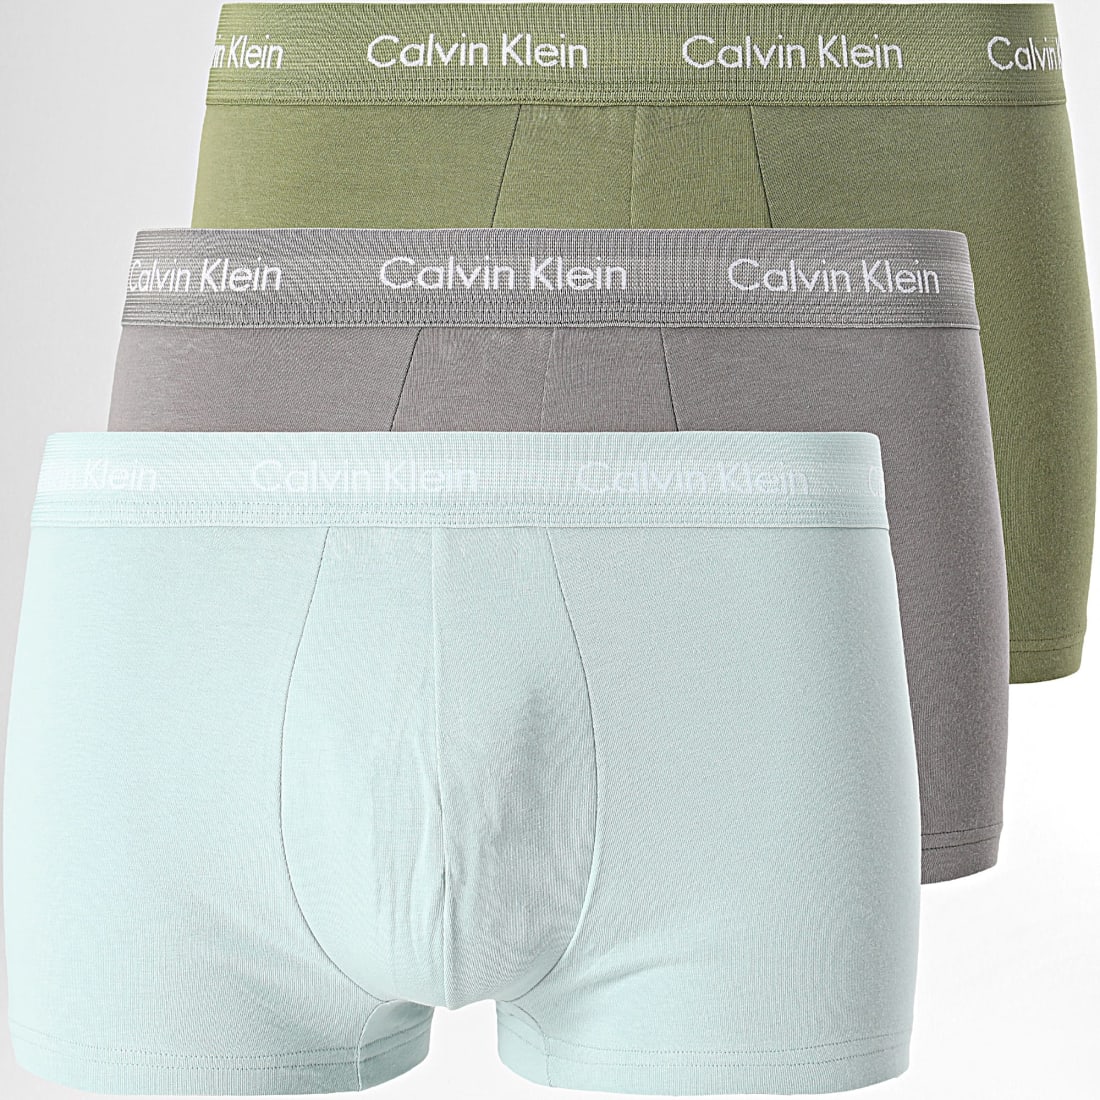 Calvin Klein Jeans COTTON STRECH LOW RISE TRUNK X 3 Noir / Blanc / Gris  Chiné - Livraison Gratuite